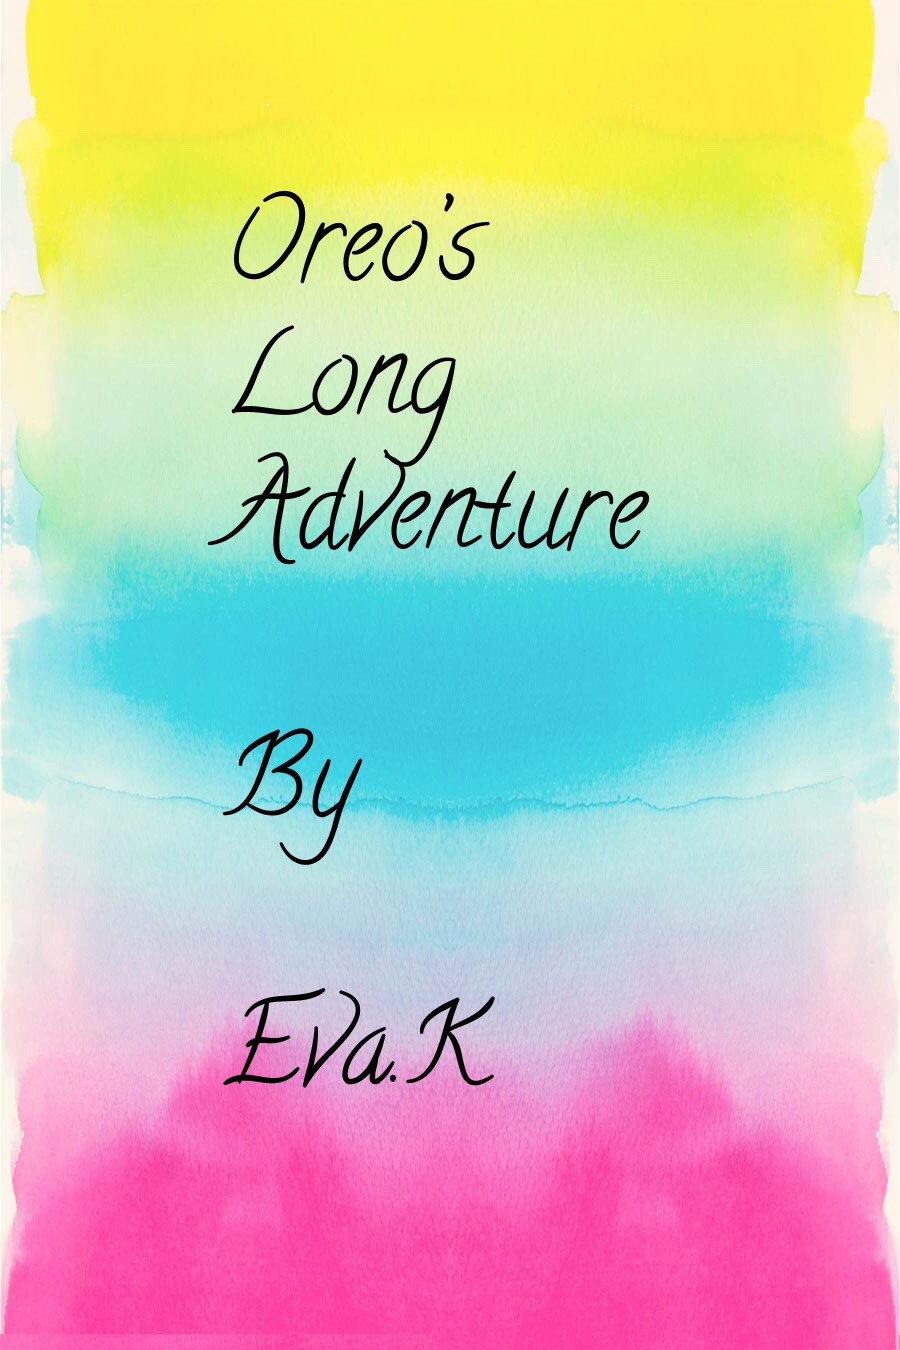 Oreo’s Long Adventure by Eva K